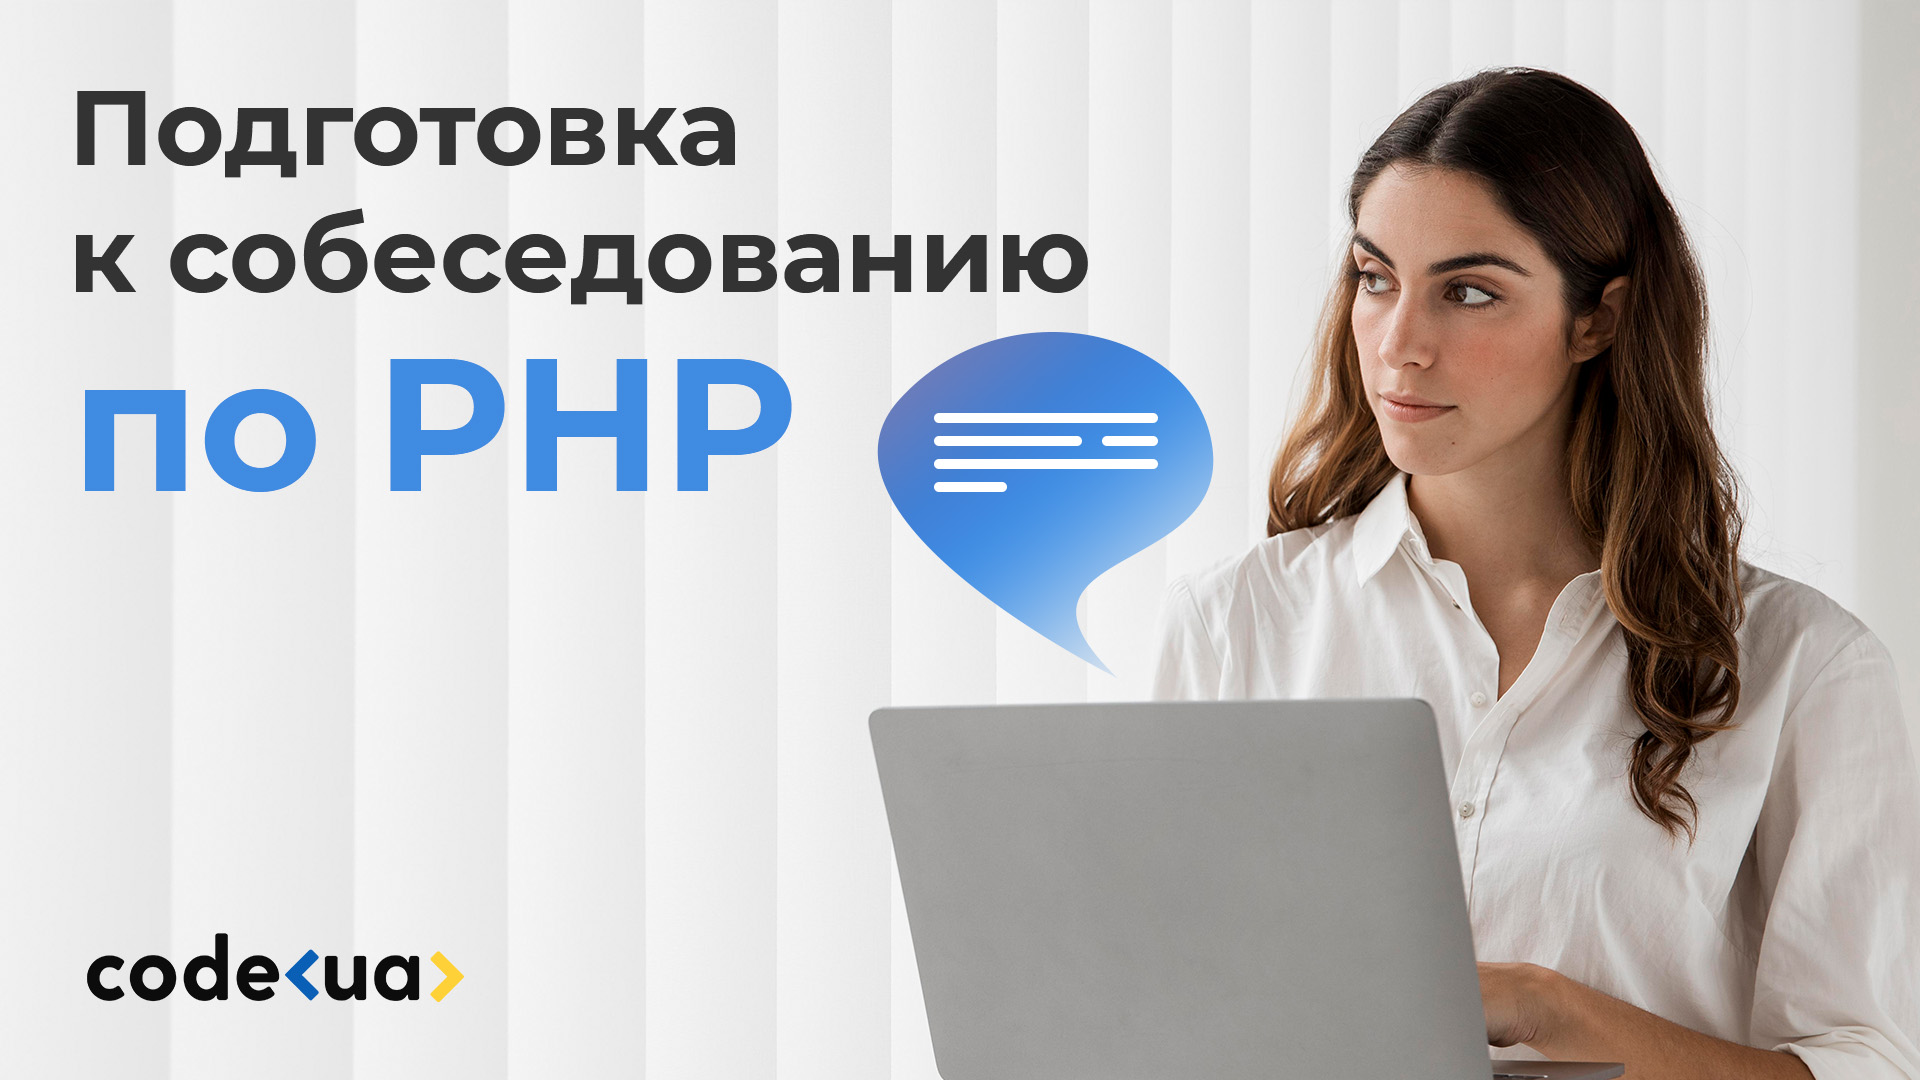 Подготовка к собеседованию по PHP — вопросы и ответы